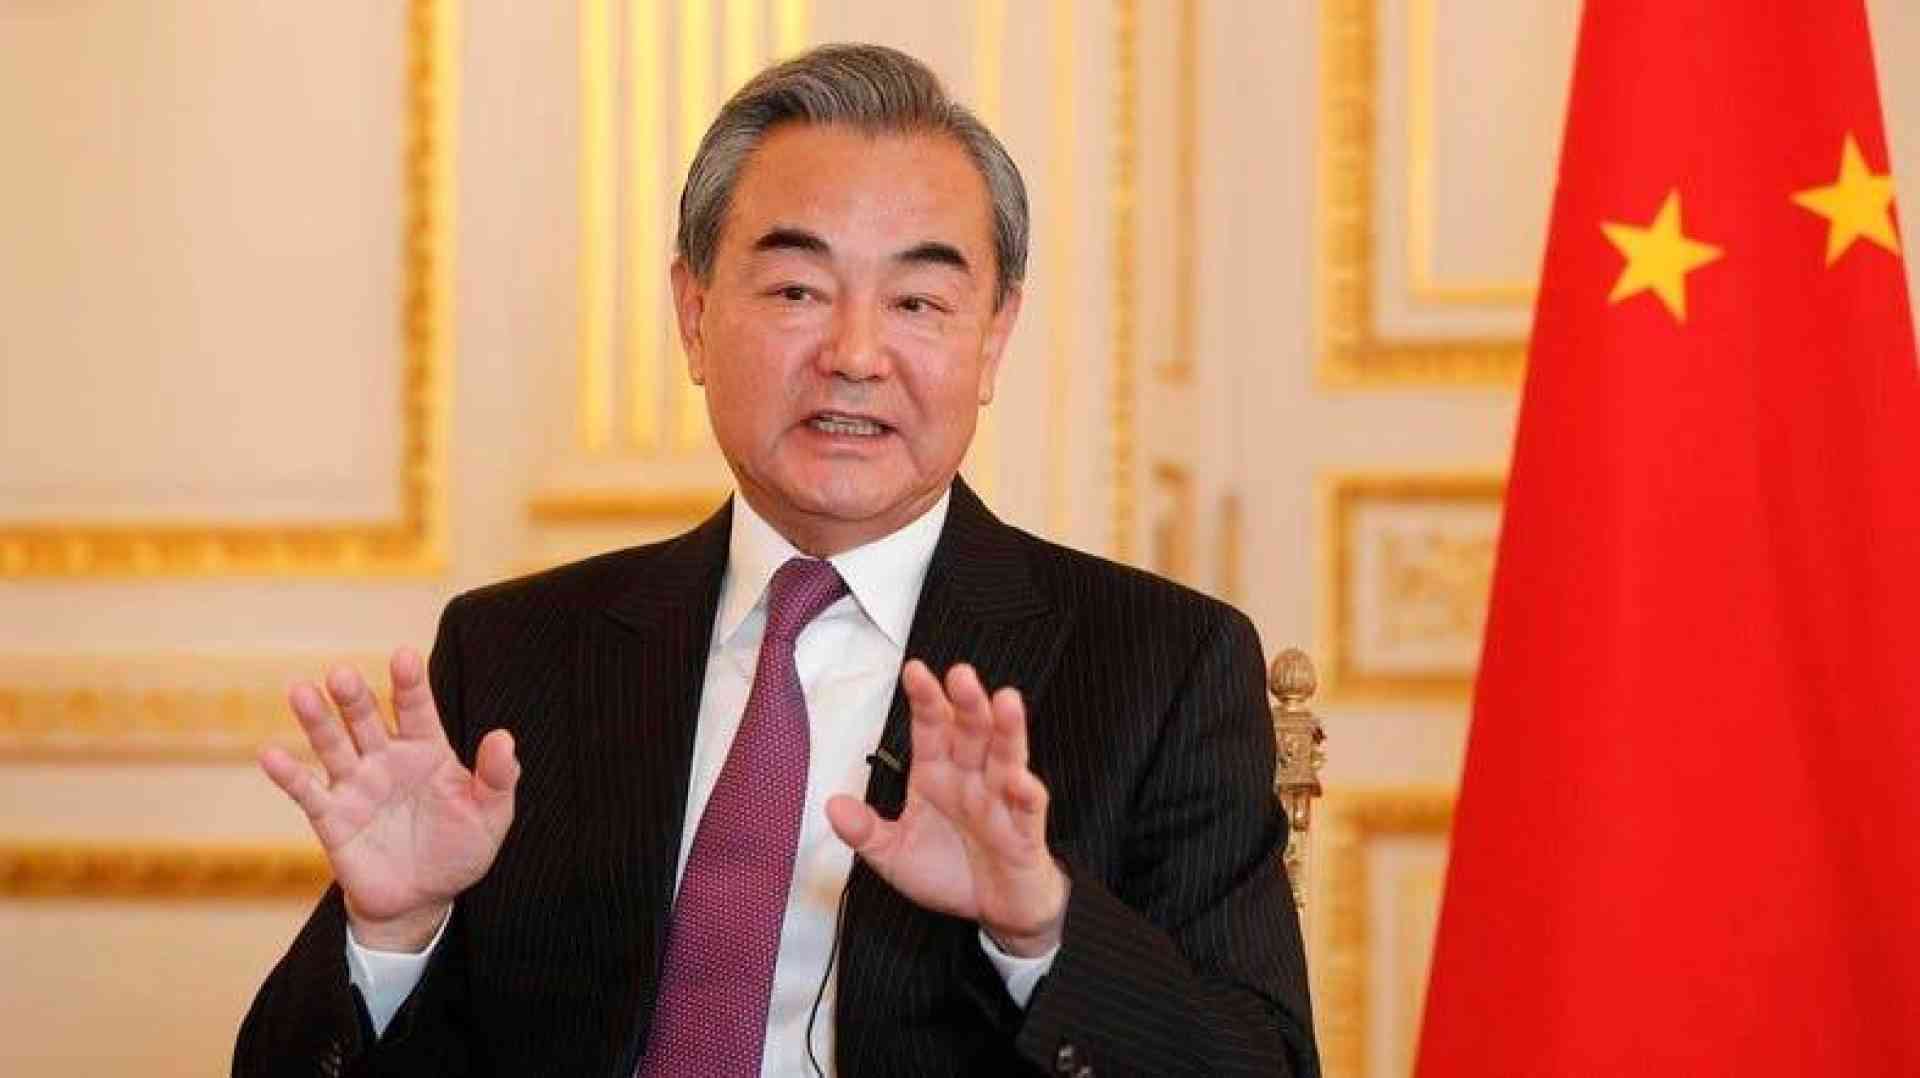 وزير الخارجية الصيني متورط في فضيحة غرامية .. والتحقيقات بشأنه سارية